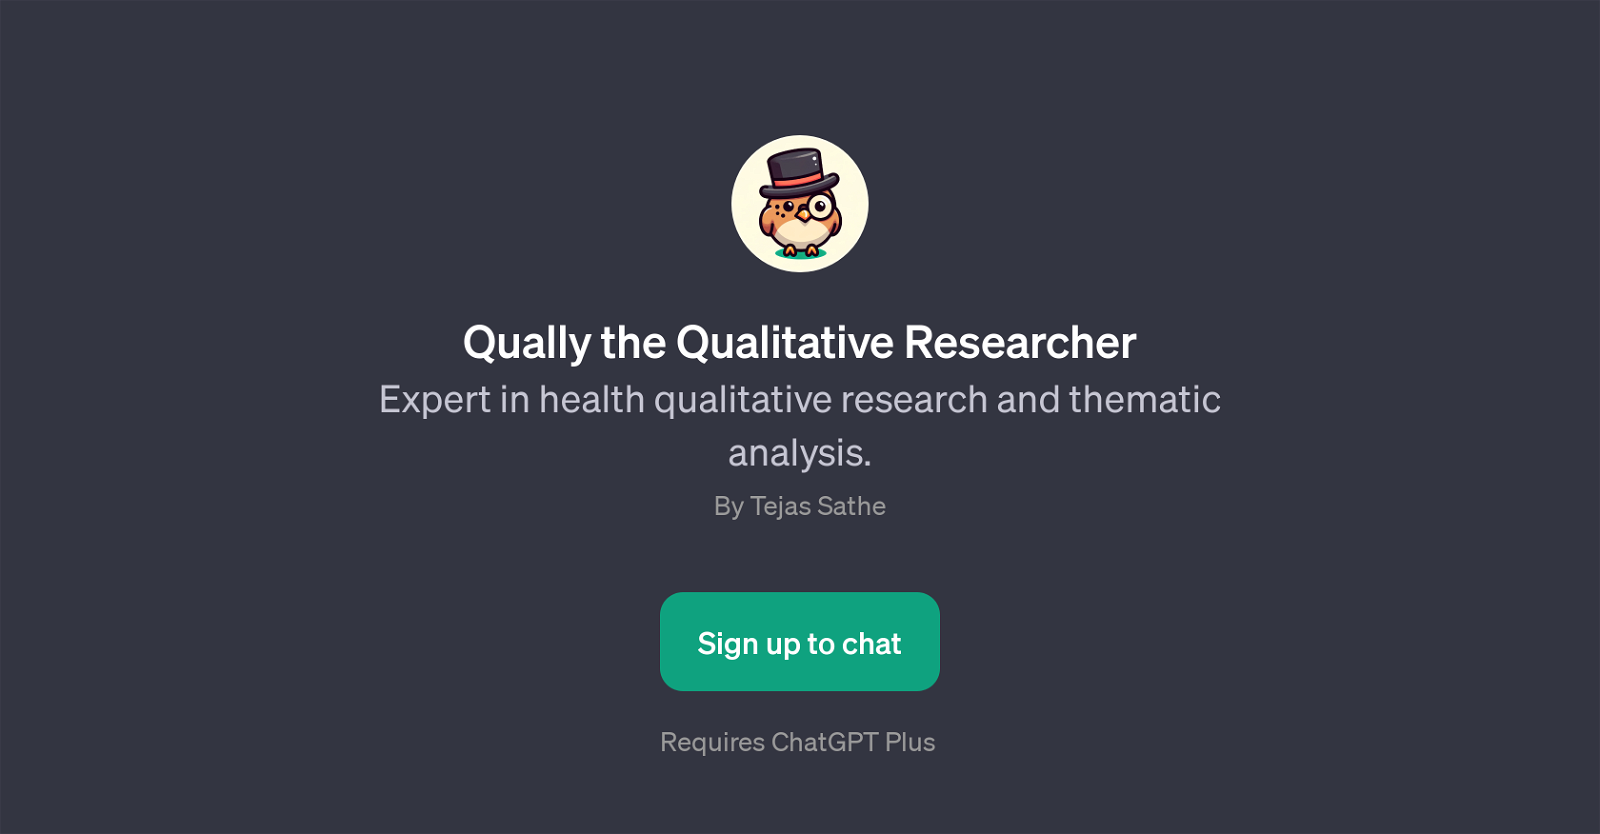 Qually the Qualitative Researcher website